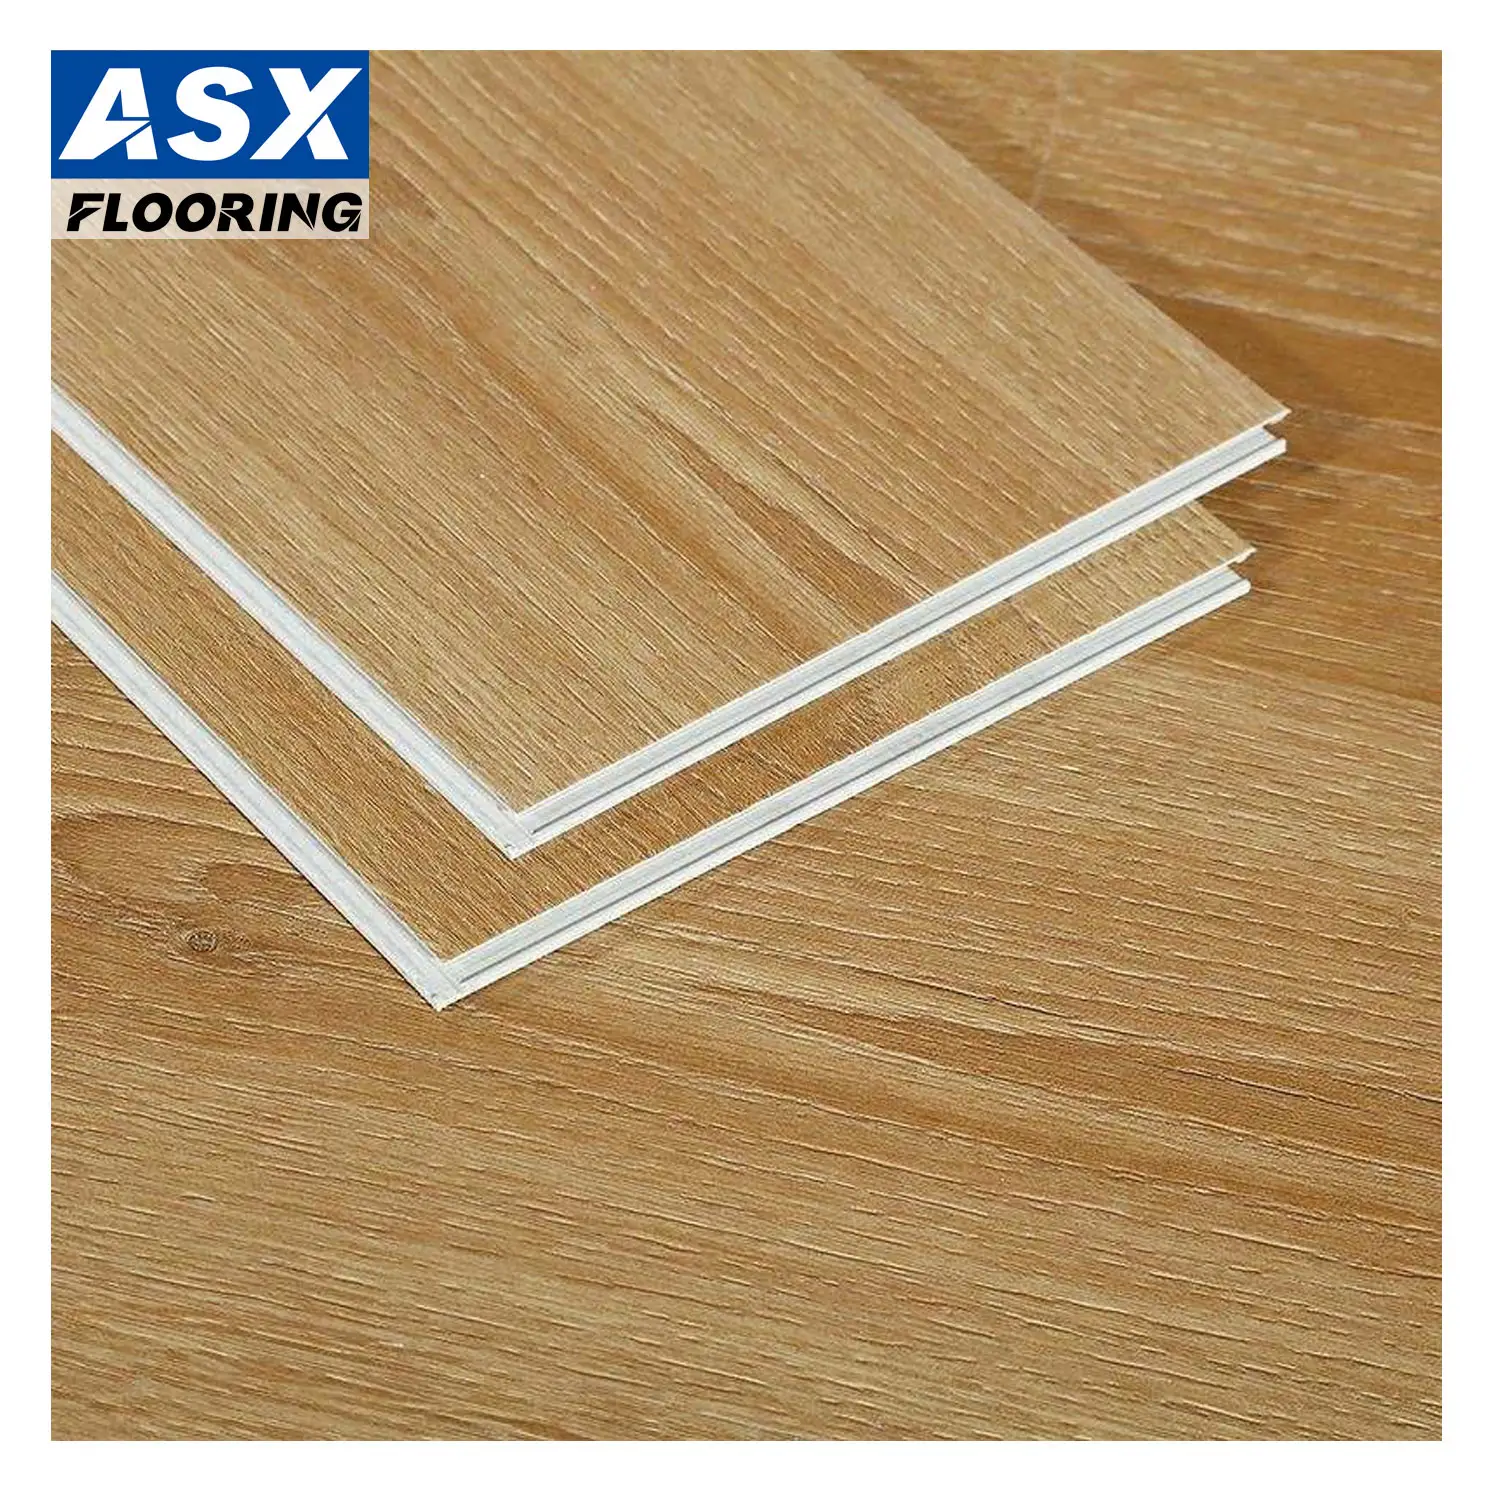 Spc Floor Manufacturer Floor Vinyl Plastic Wood Grain Spc Click Flooring With Ixpe